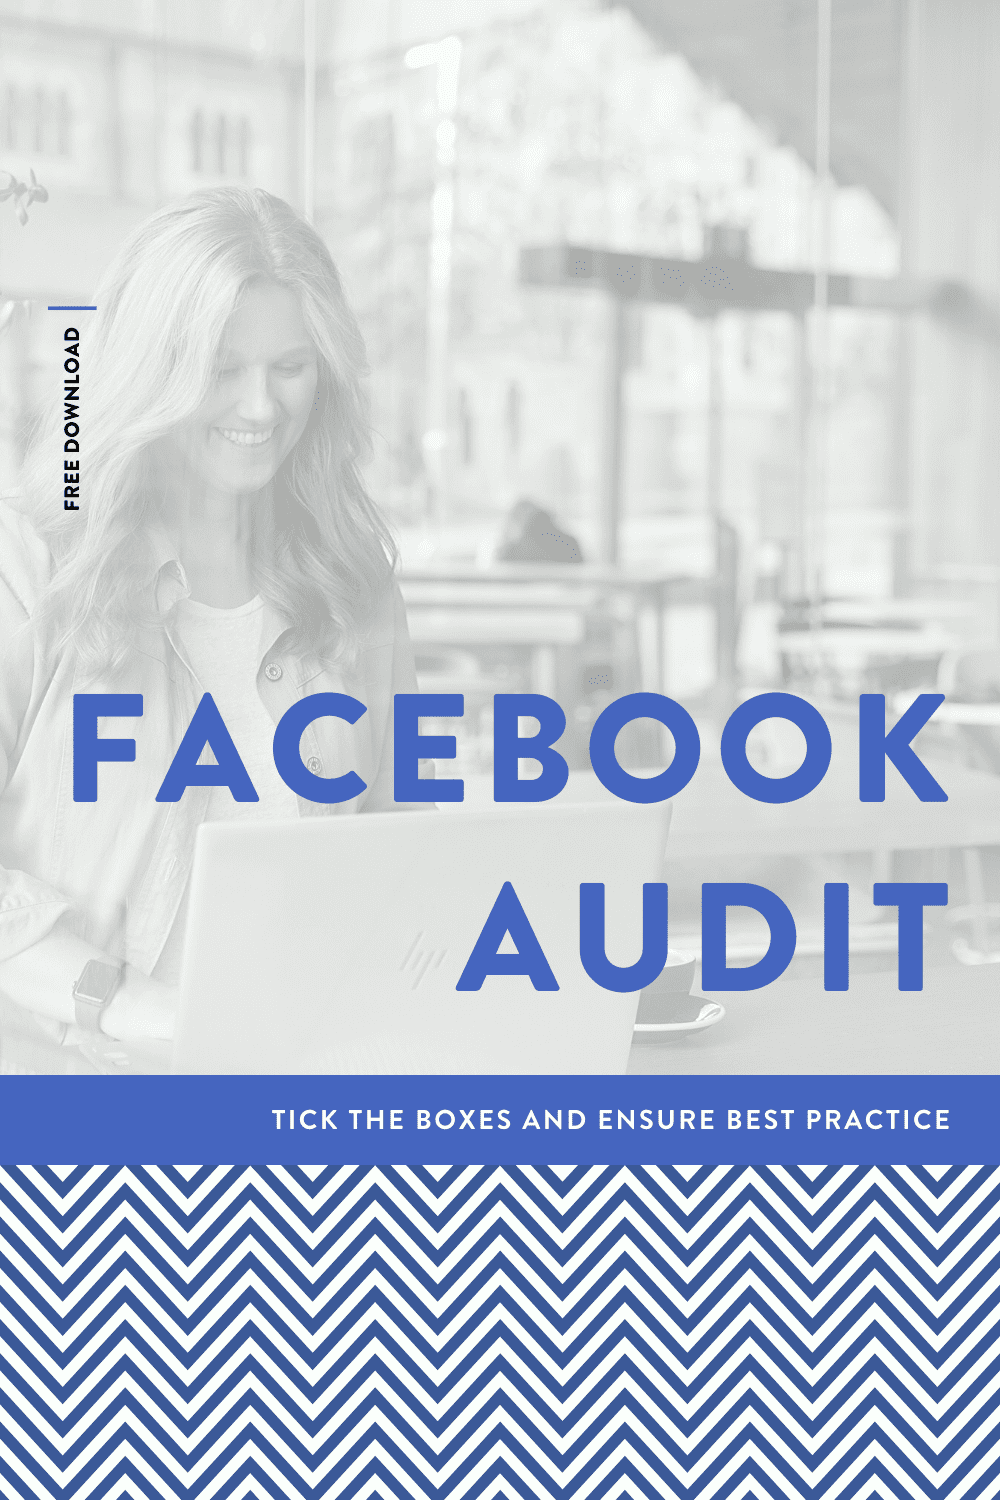 Facebook Audit // FREE DOWNLOAD